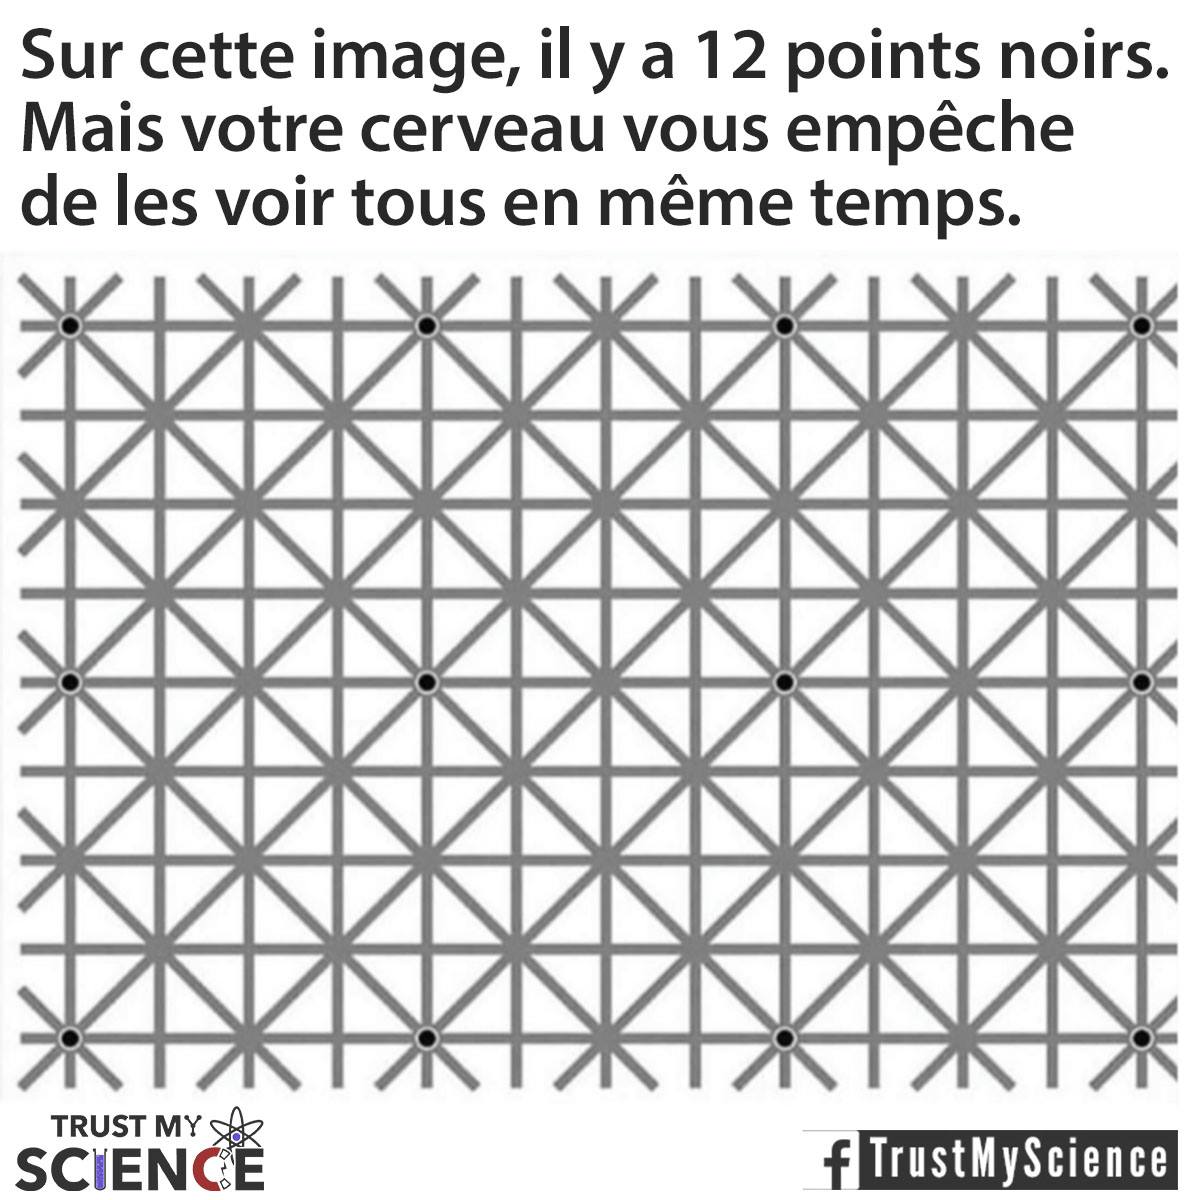 Trust_My_Science_-_sur_cette_image_il_y_a_12_points_noirs.jpg